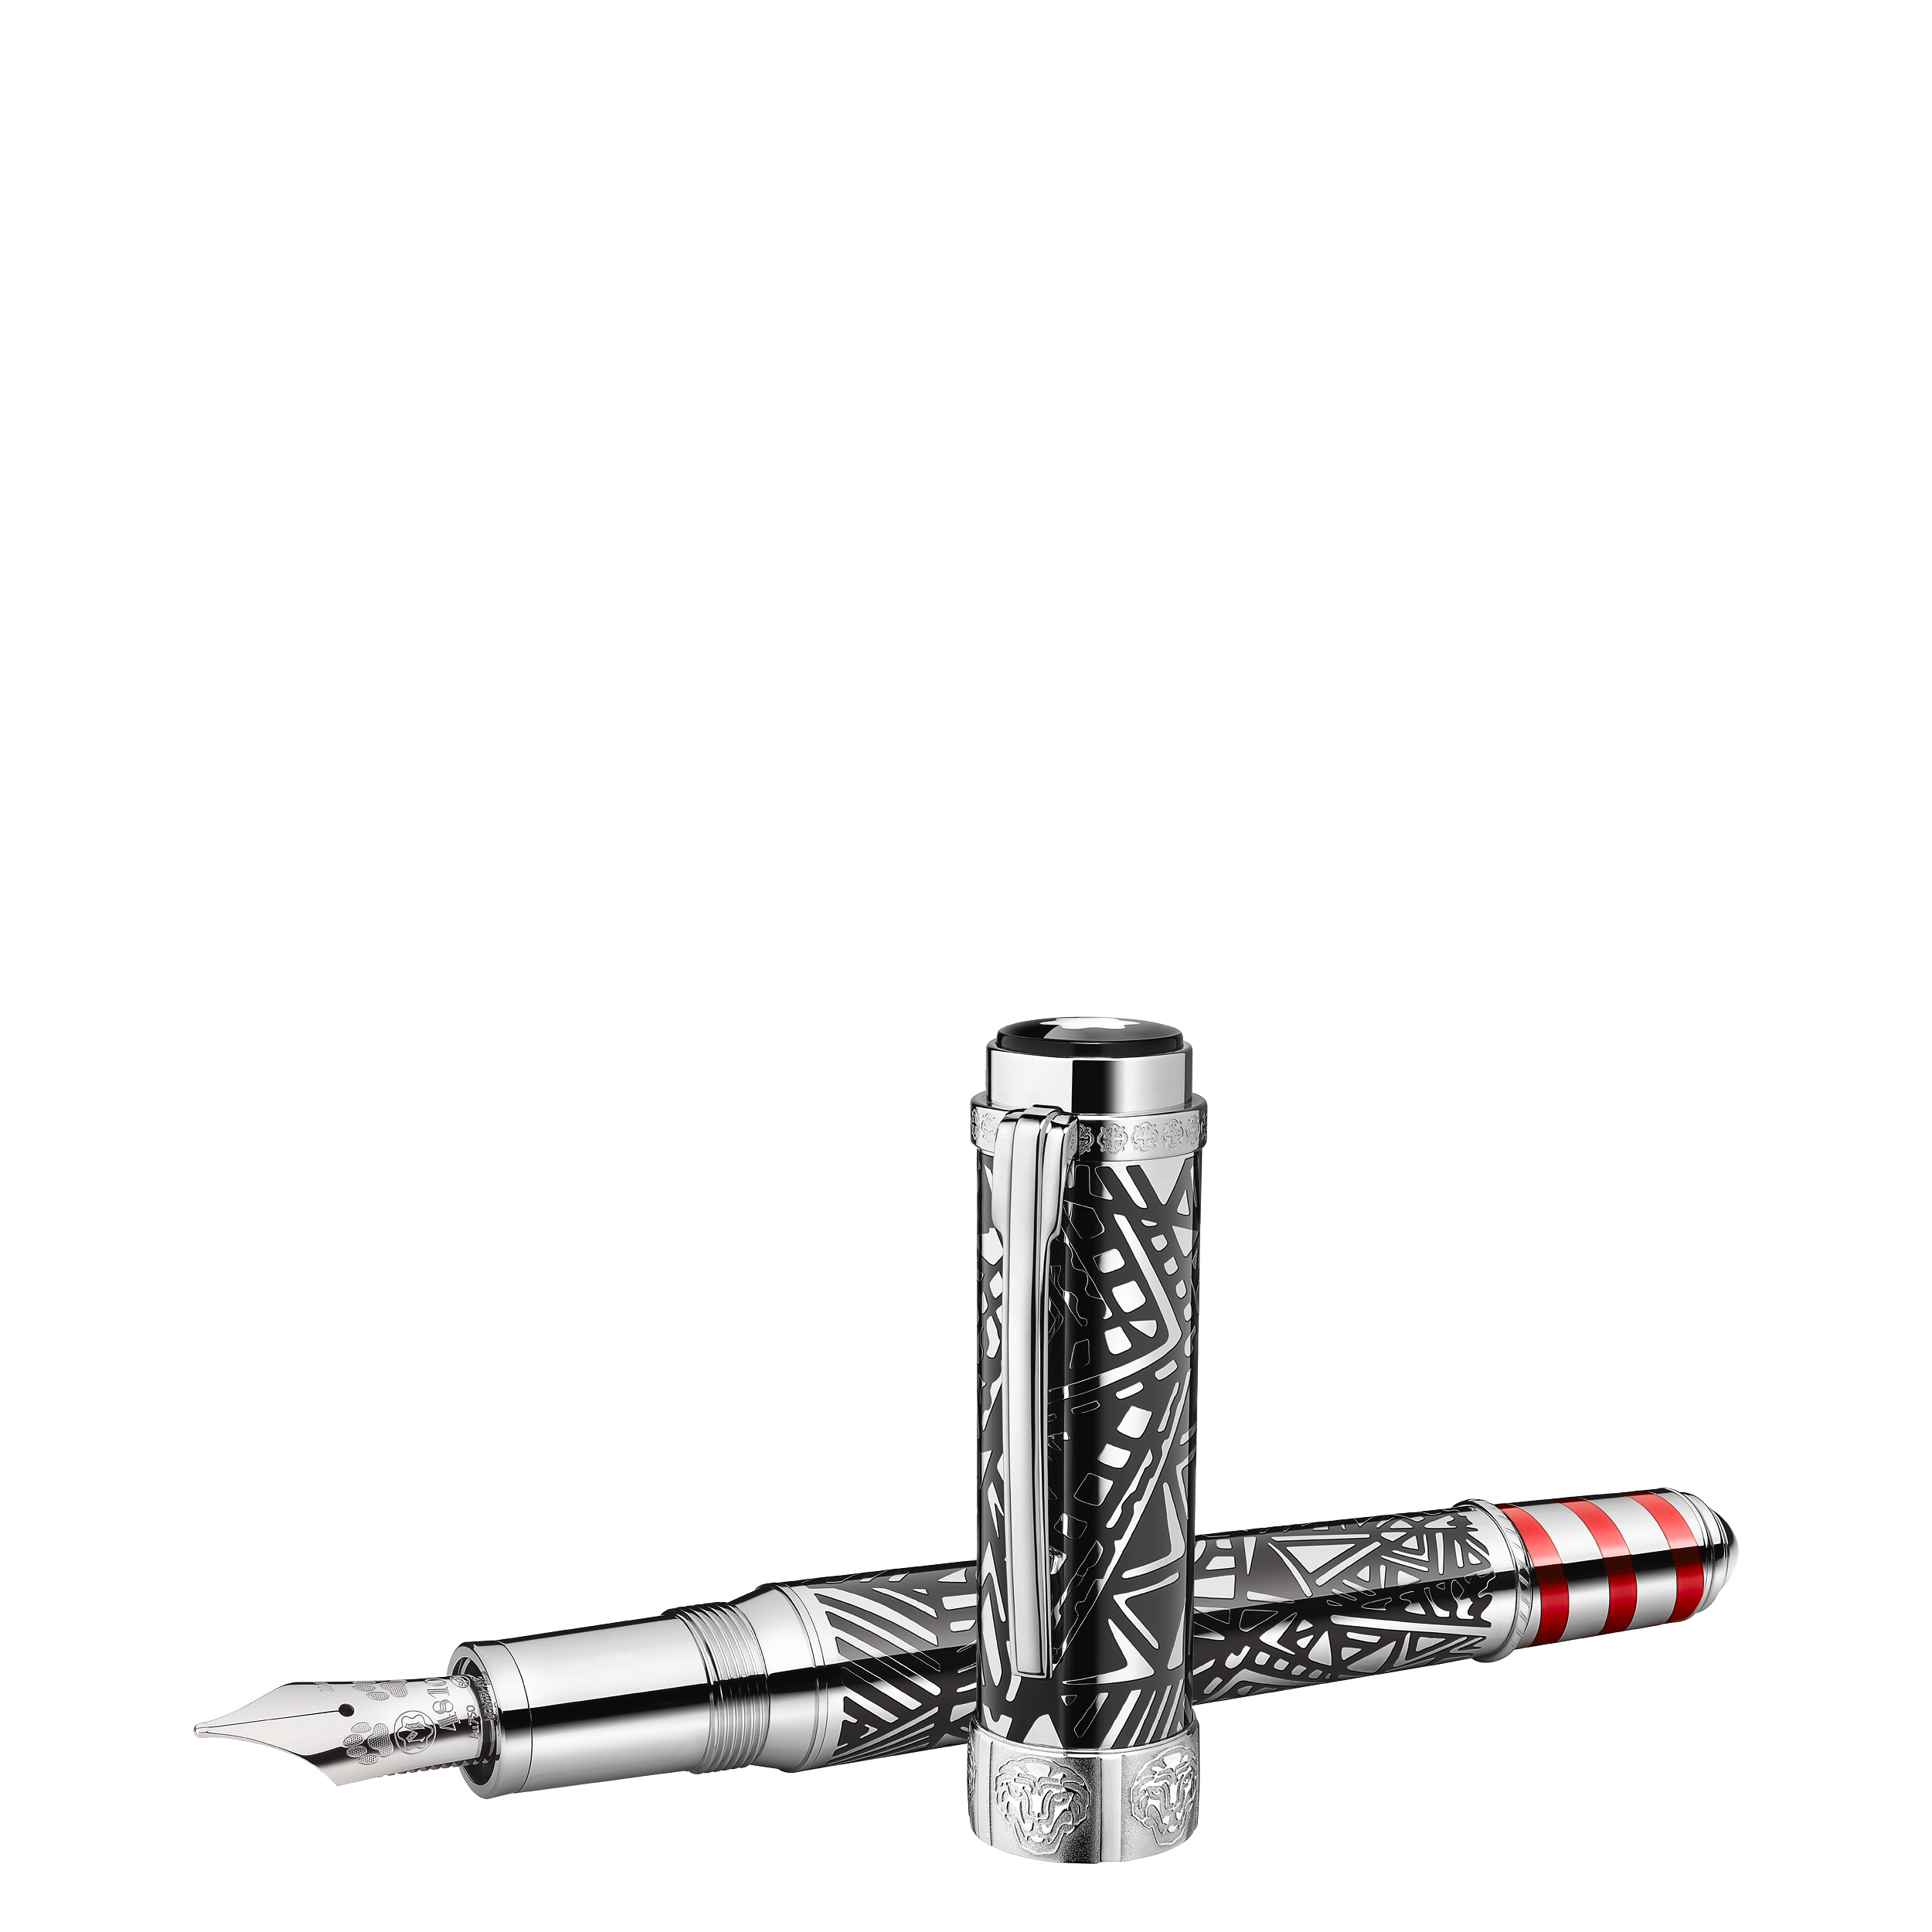 قلم حبر سائل من مجموعة رعاة الفن إشادة ببيغي غوغنهايم بإصدار محدود 4810